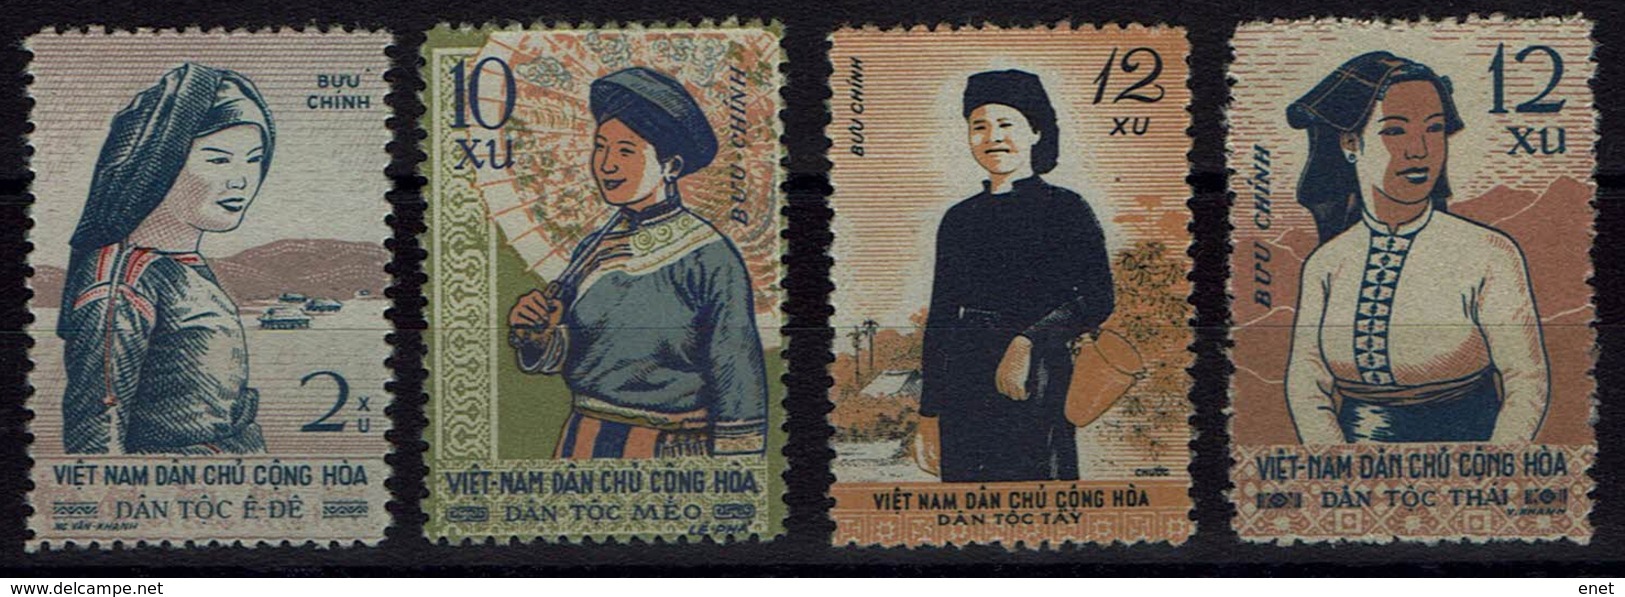 Vietnam 1960 - Trachten  Folk Costume - MiNr 116-119 - Kostüme